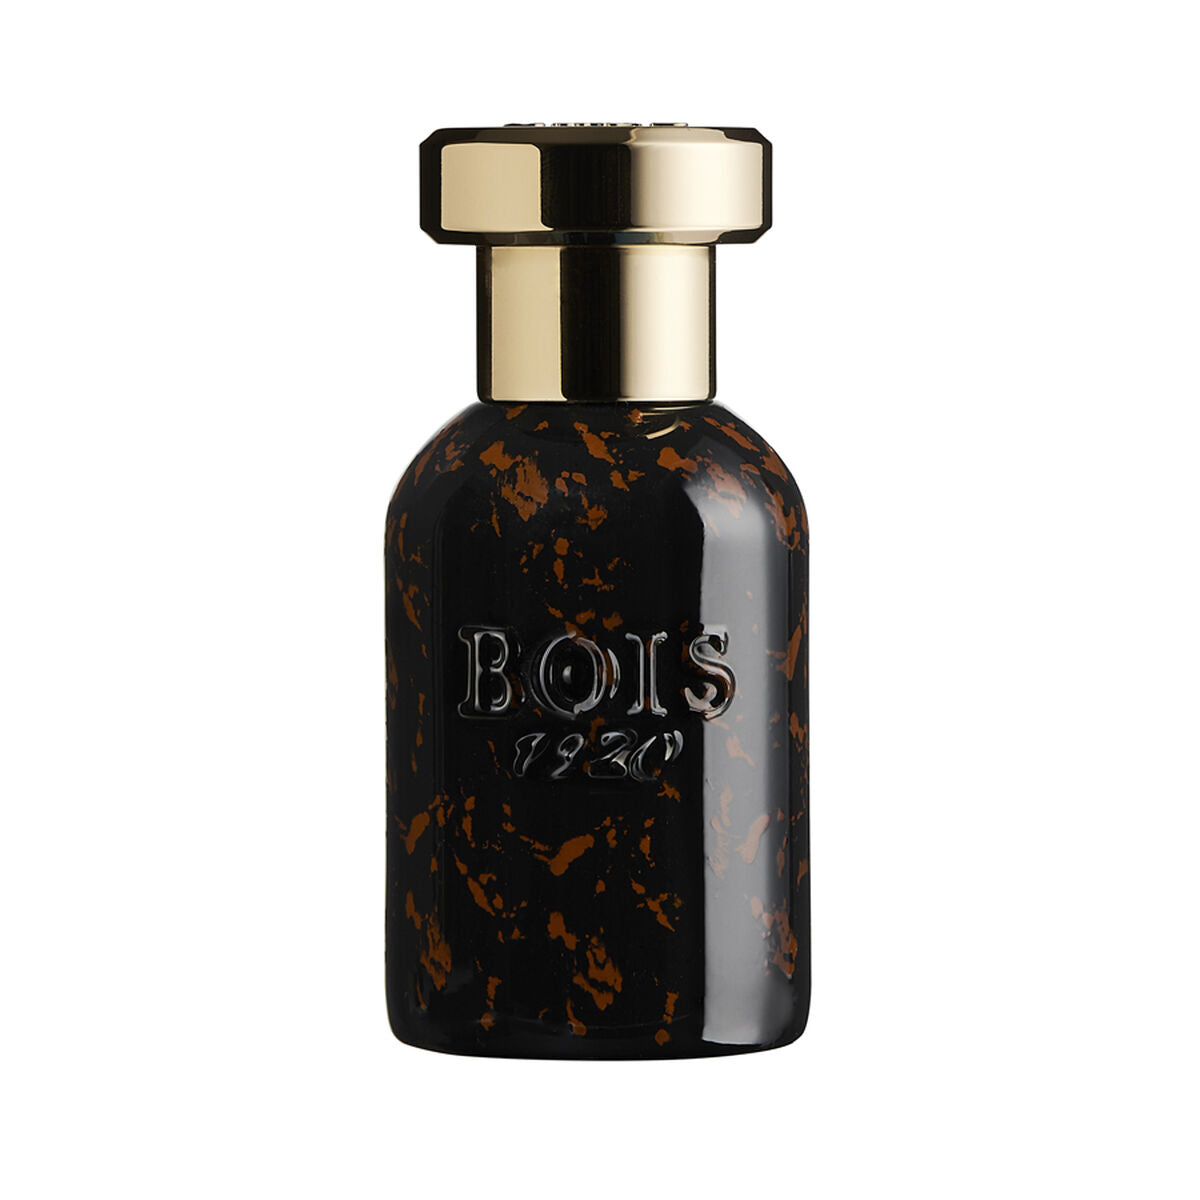 Uniseks Parfum Bois 1920 Durocaffe' 50 ml